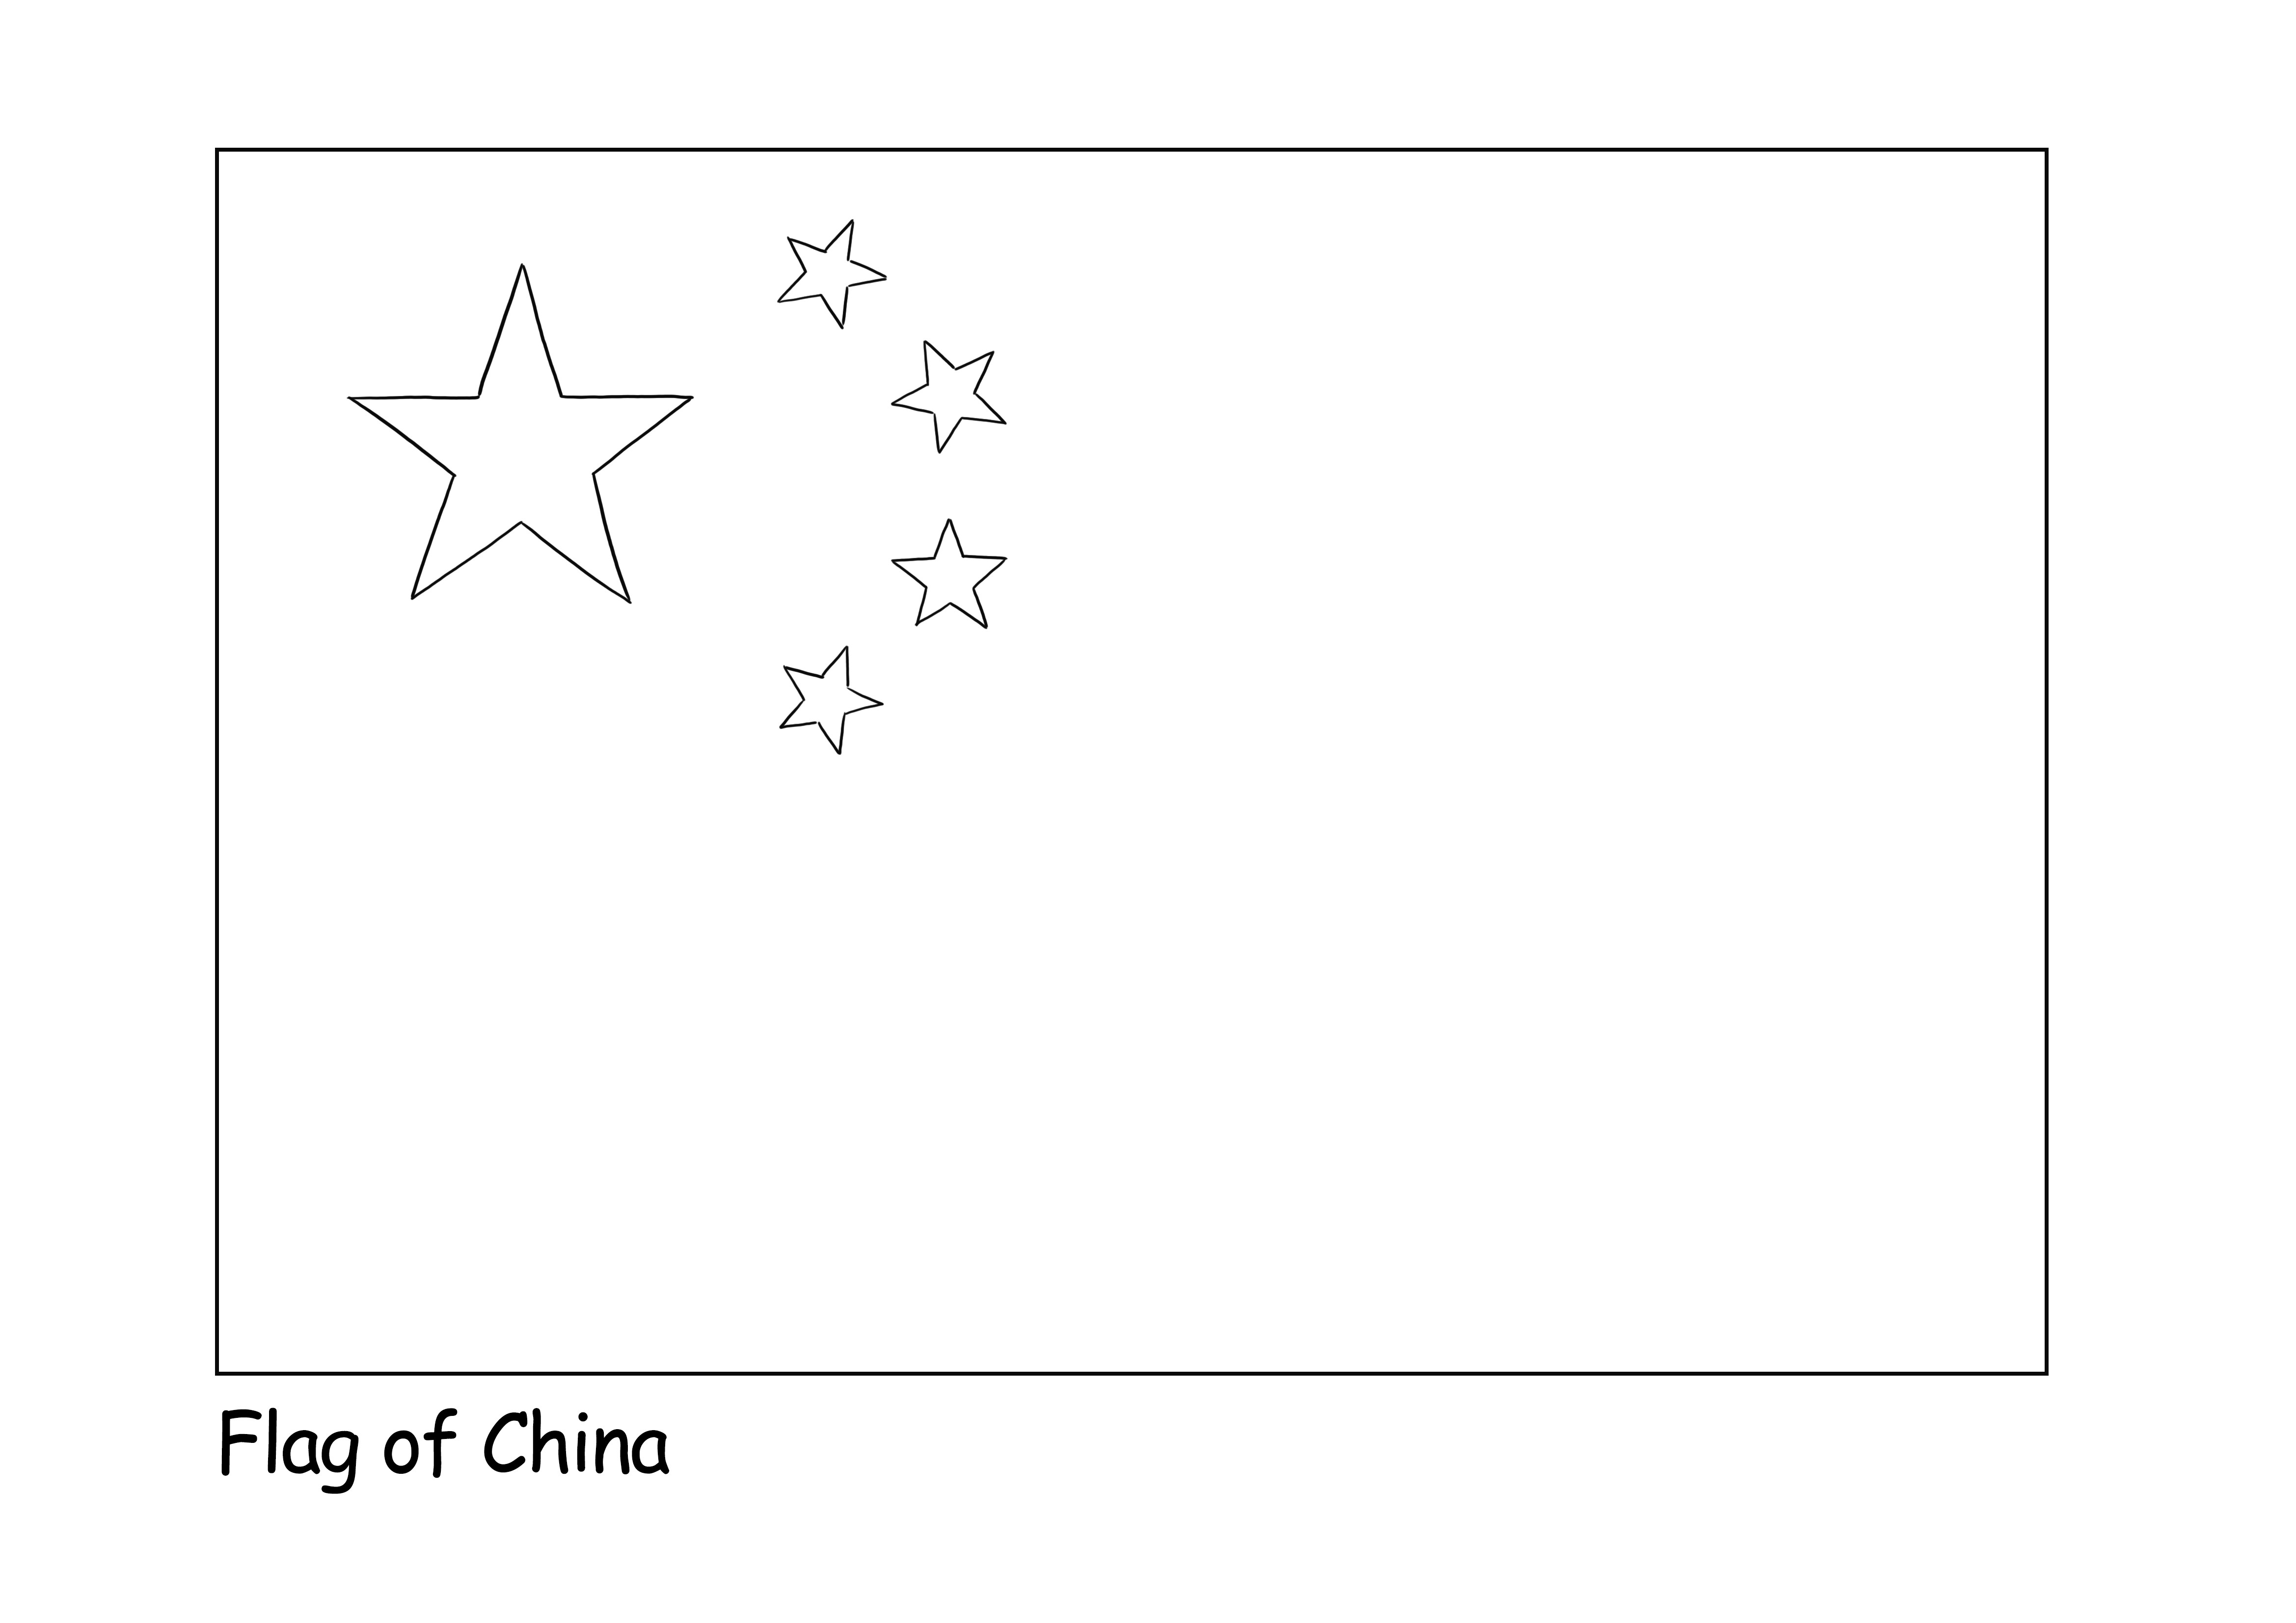 Bezpłatny arkusz do kolorowania Flaga Chin dla dzieci, aby dowiedzieć się o flagach różnych krajów